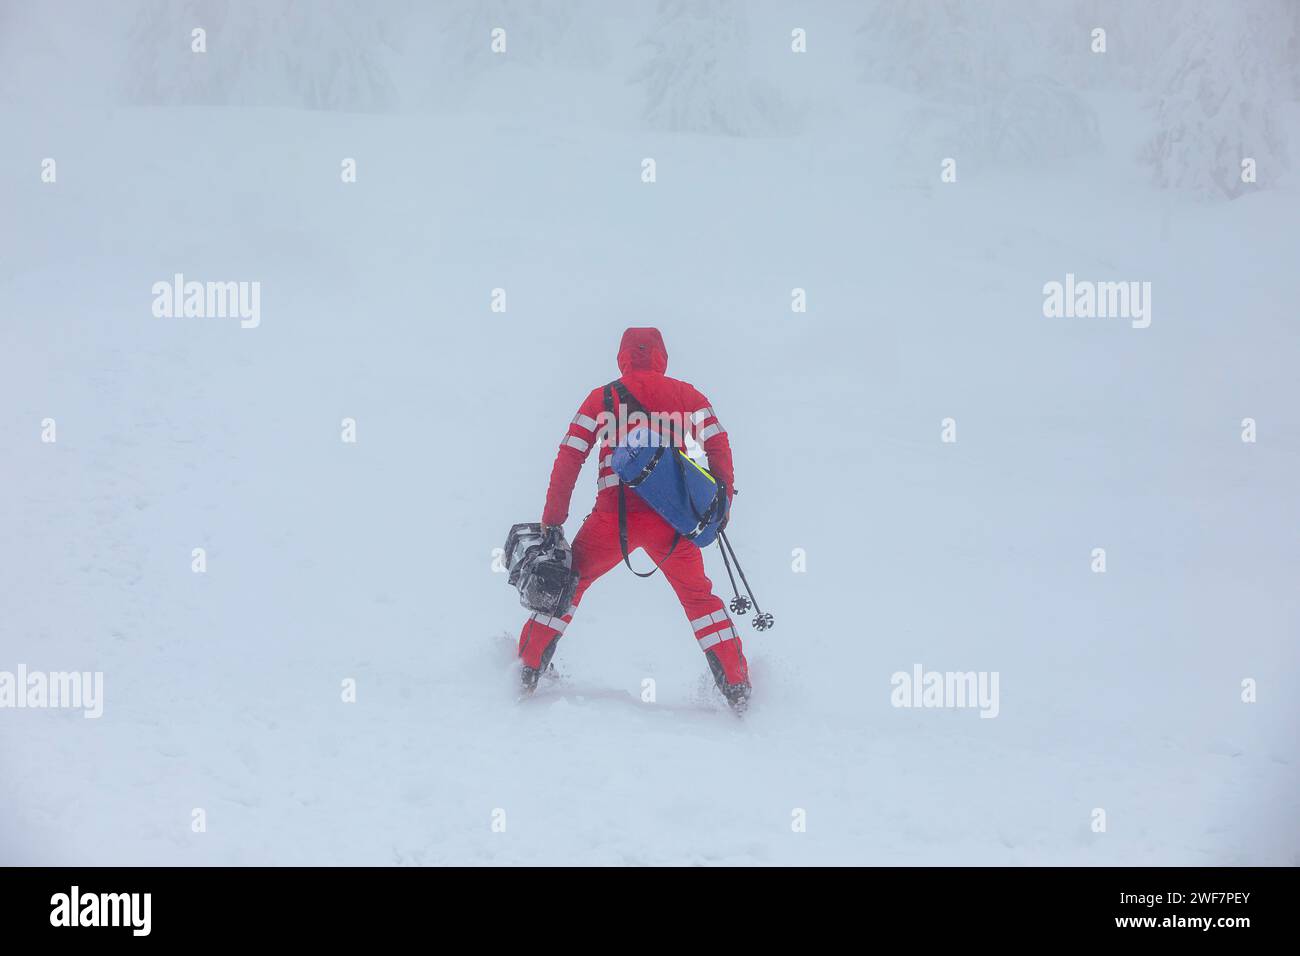 Sanitäter auf Skiern mit medizinischer Ausrüstung Skifahren in den Bergen im Winter während des Schneesturms. Themen retten bei extremen Wetterbedingungen. Stockfoto